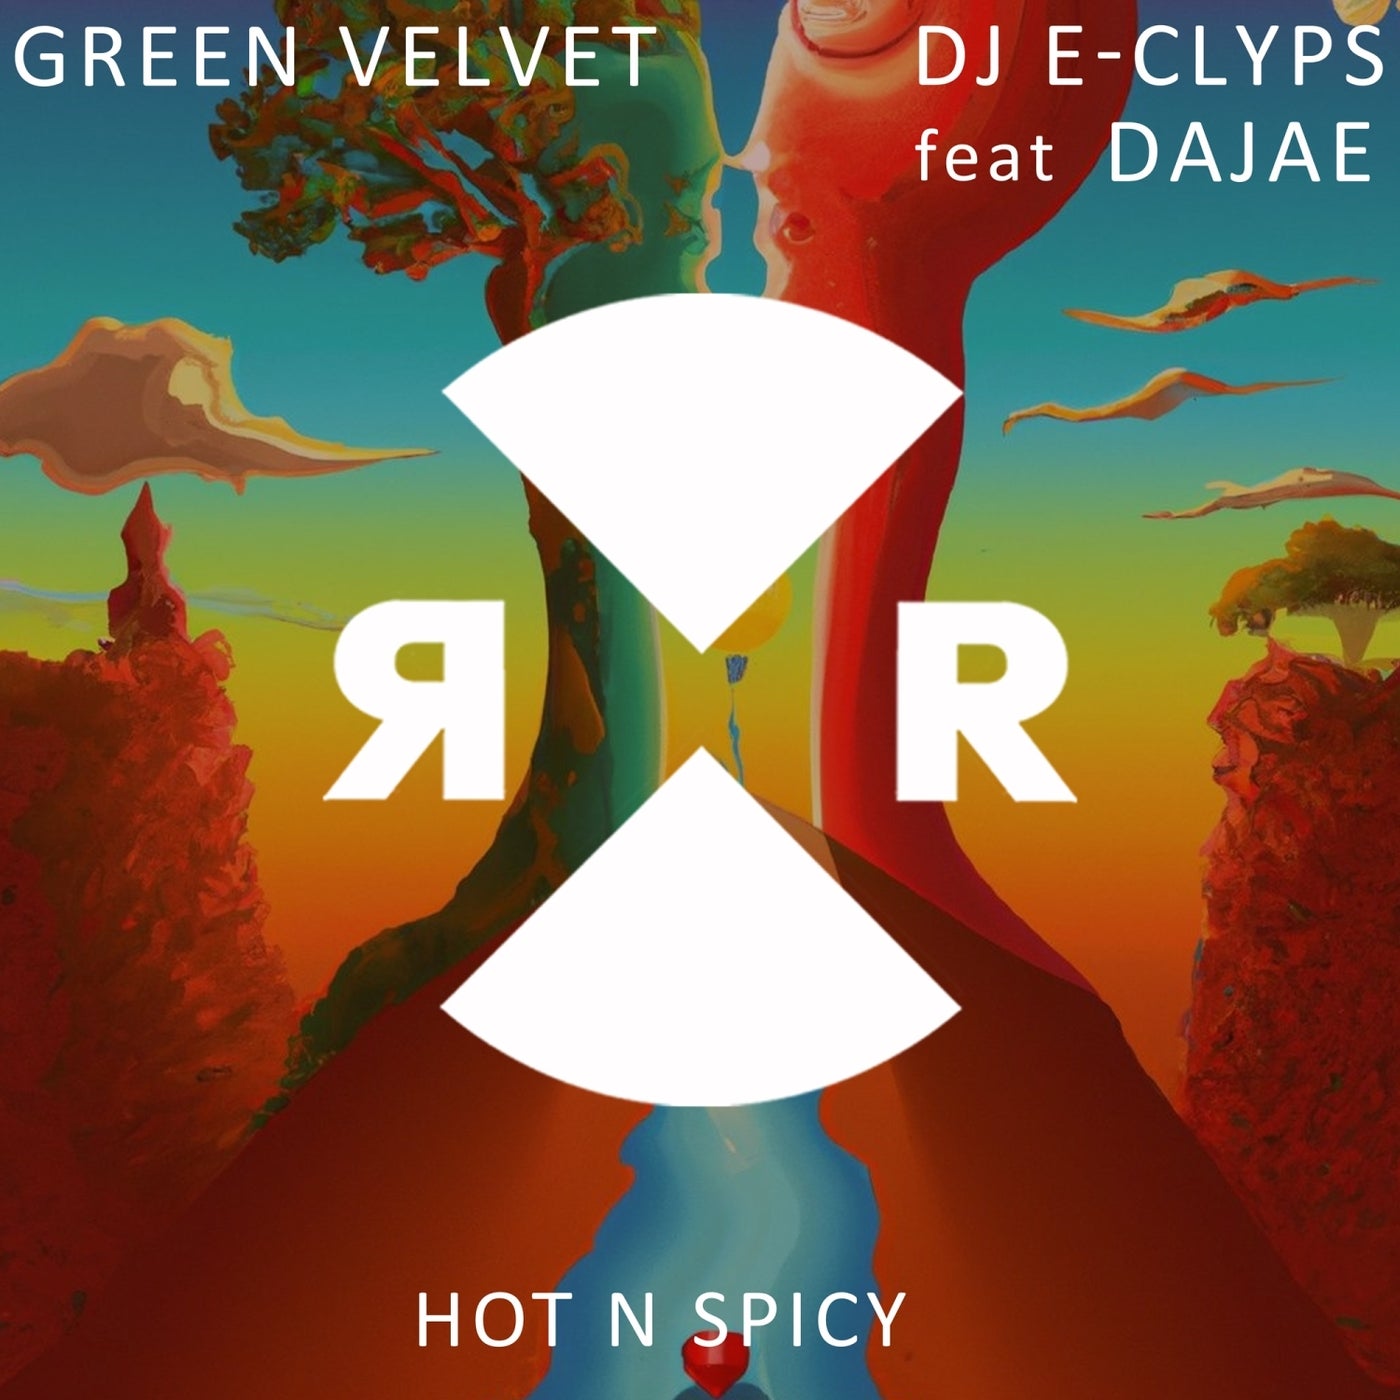 Green Velvet, Dajae, DJ E-Clyps - Hot N Spicy on Relief